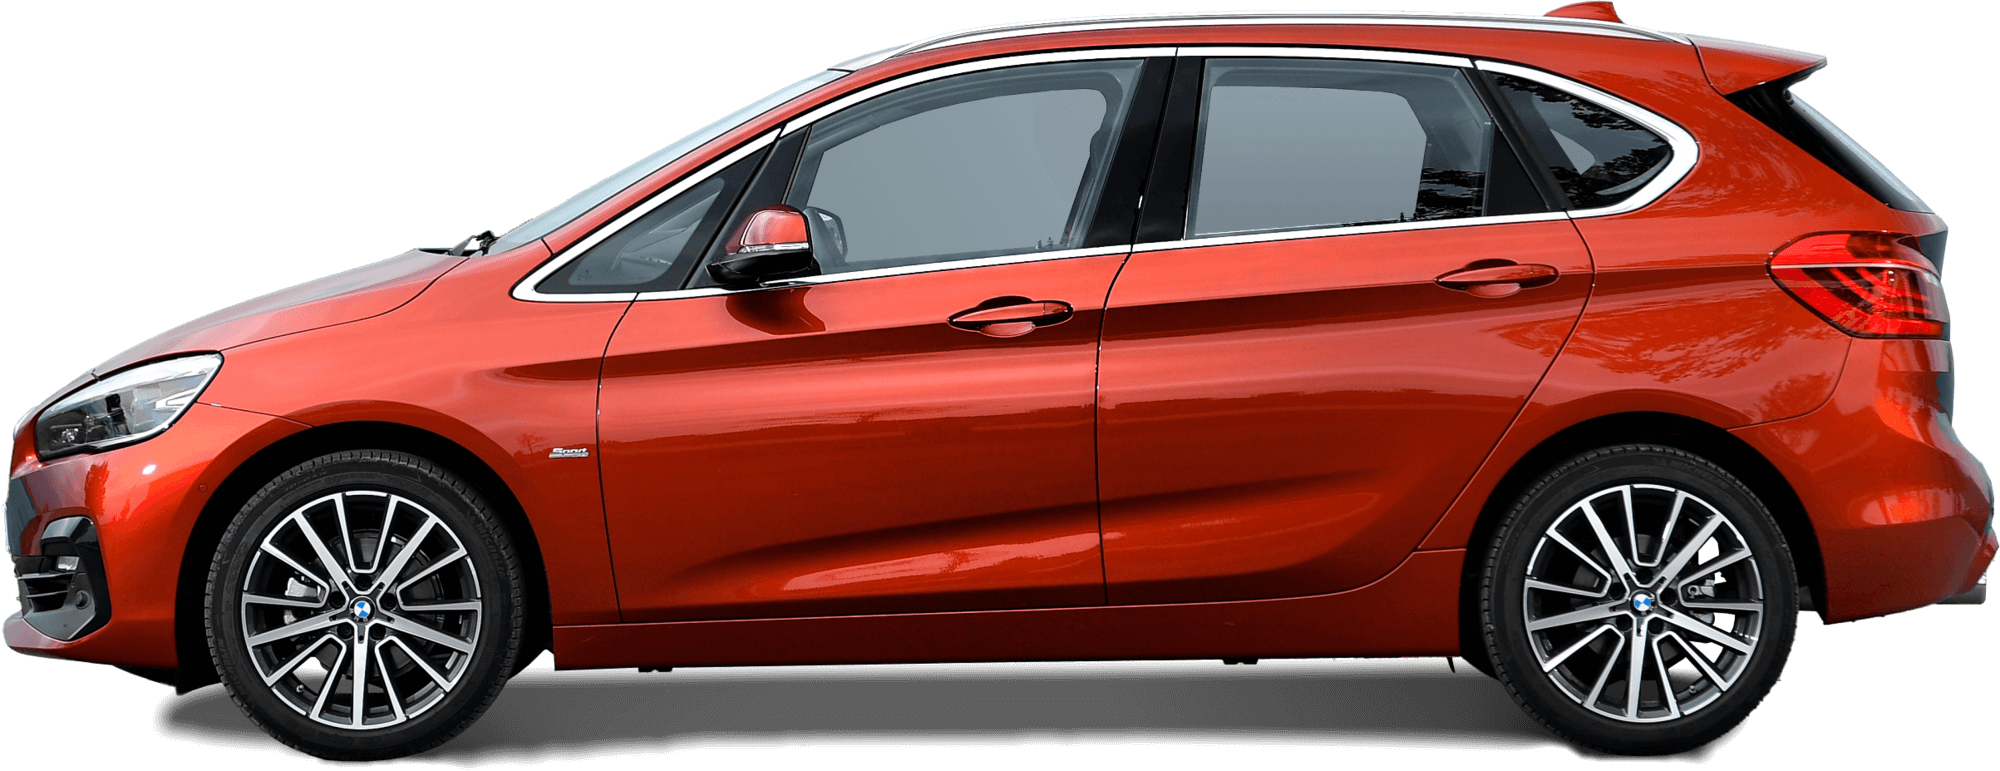 BMW Fahrzeug rot Auto Schweiz